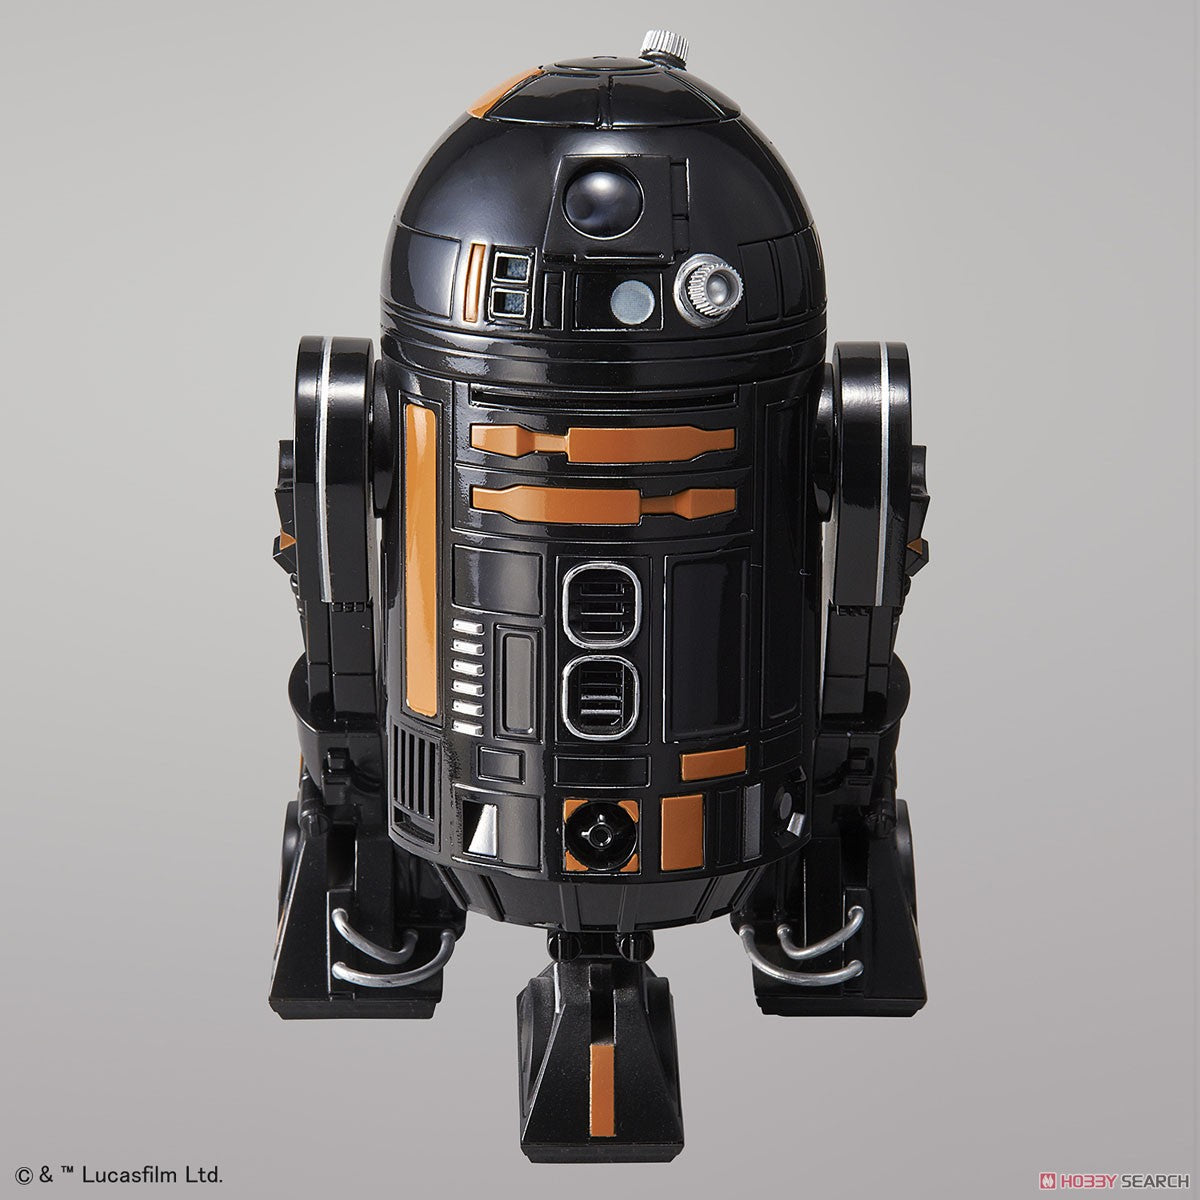 Bandai Star Wars 1/12 Scale - R2-Q5